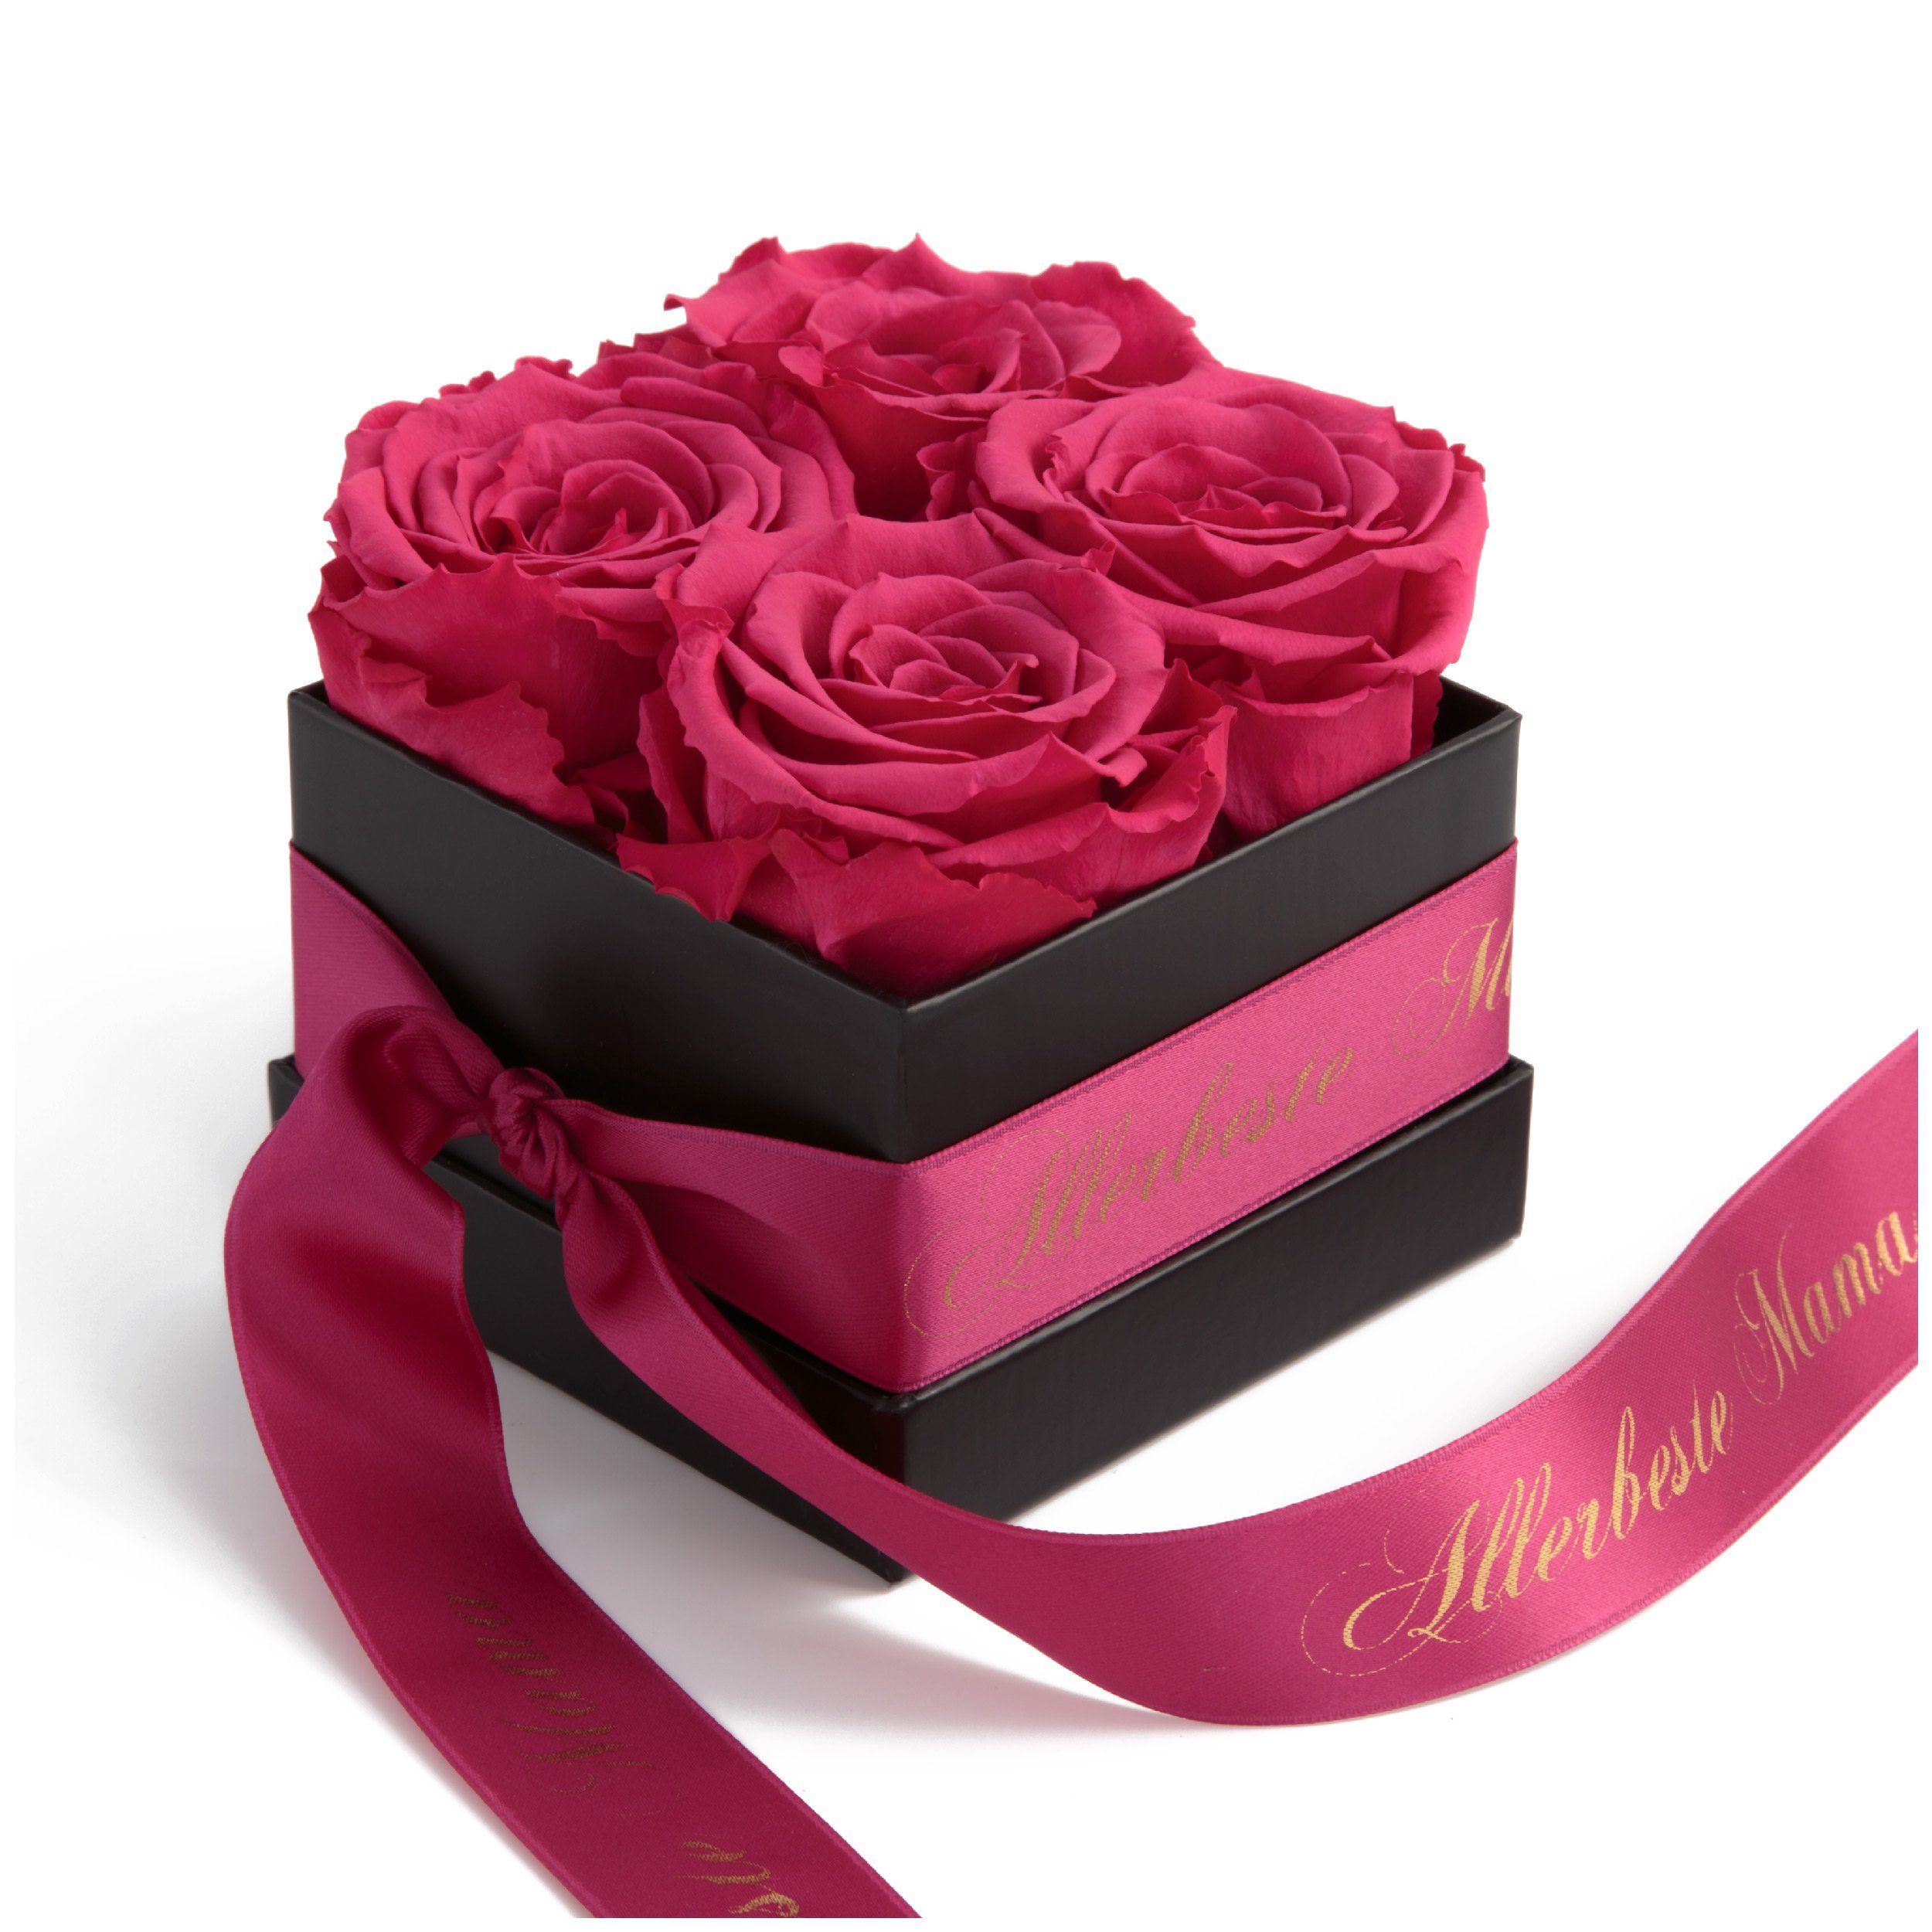 Kunstpflanze Allerbeste Mama Infinity Rosenbox mit duftenden Blumen lange haltbar Rose, ROSEMARIE SCHULZ Heidelberg, Höhe 8,5 cm, Geschenkidee Muttertag Pink